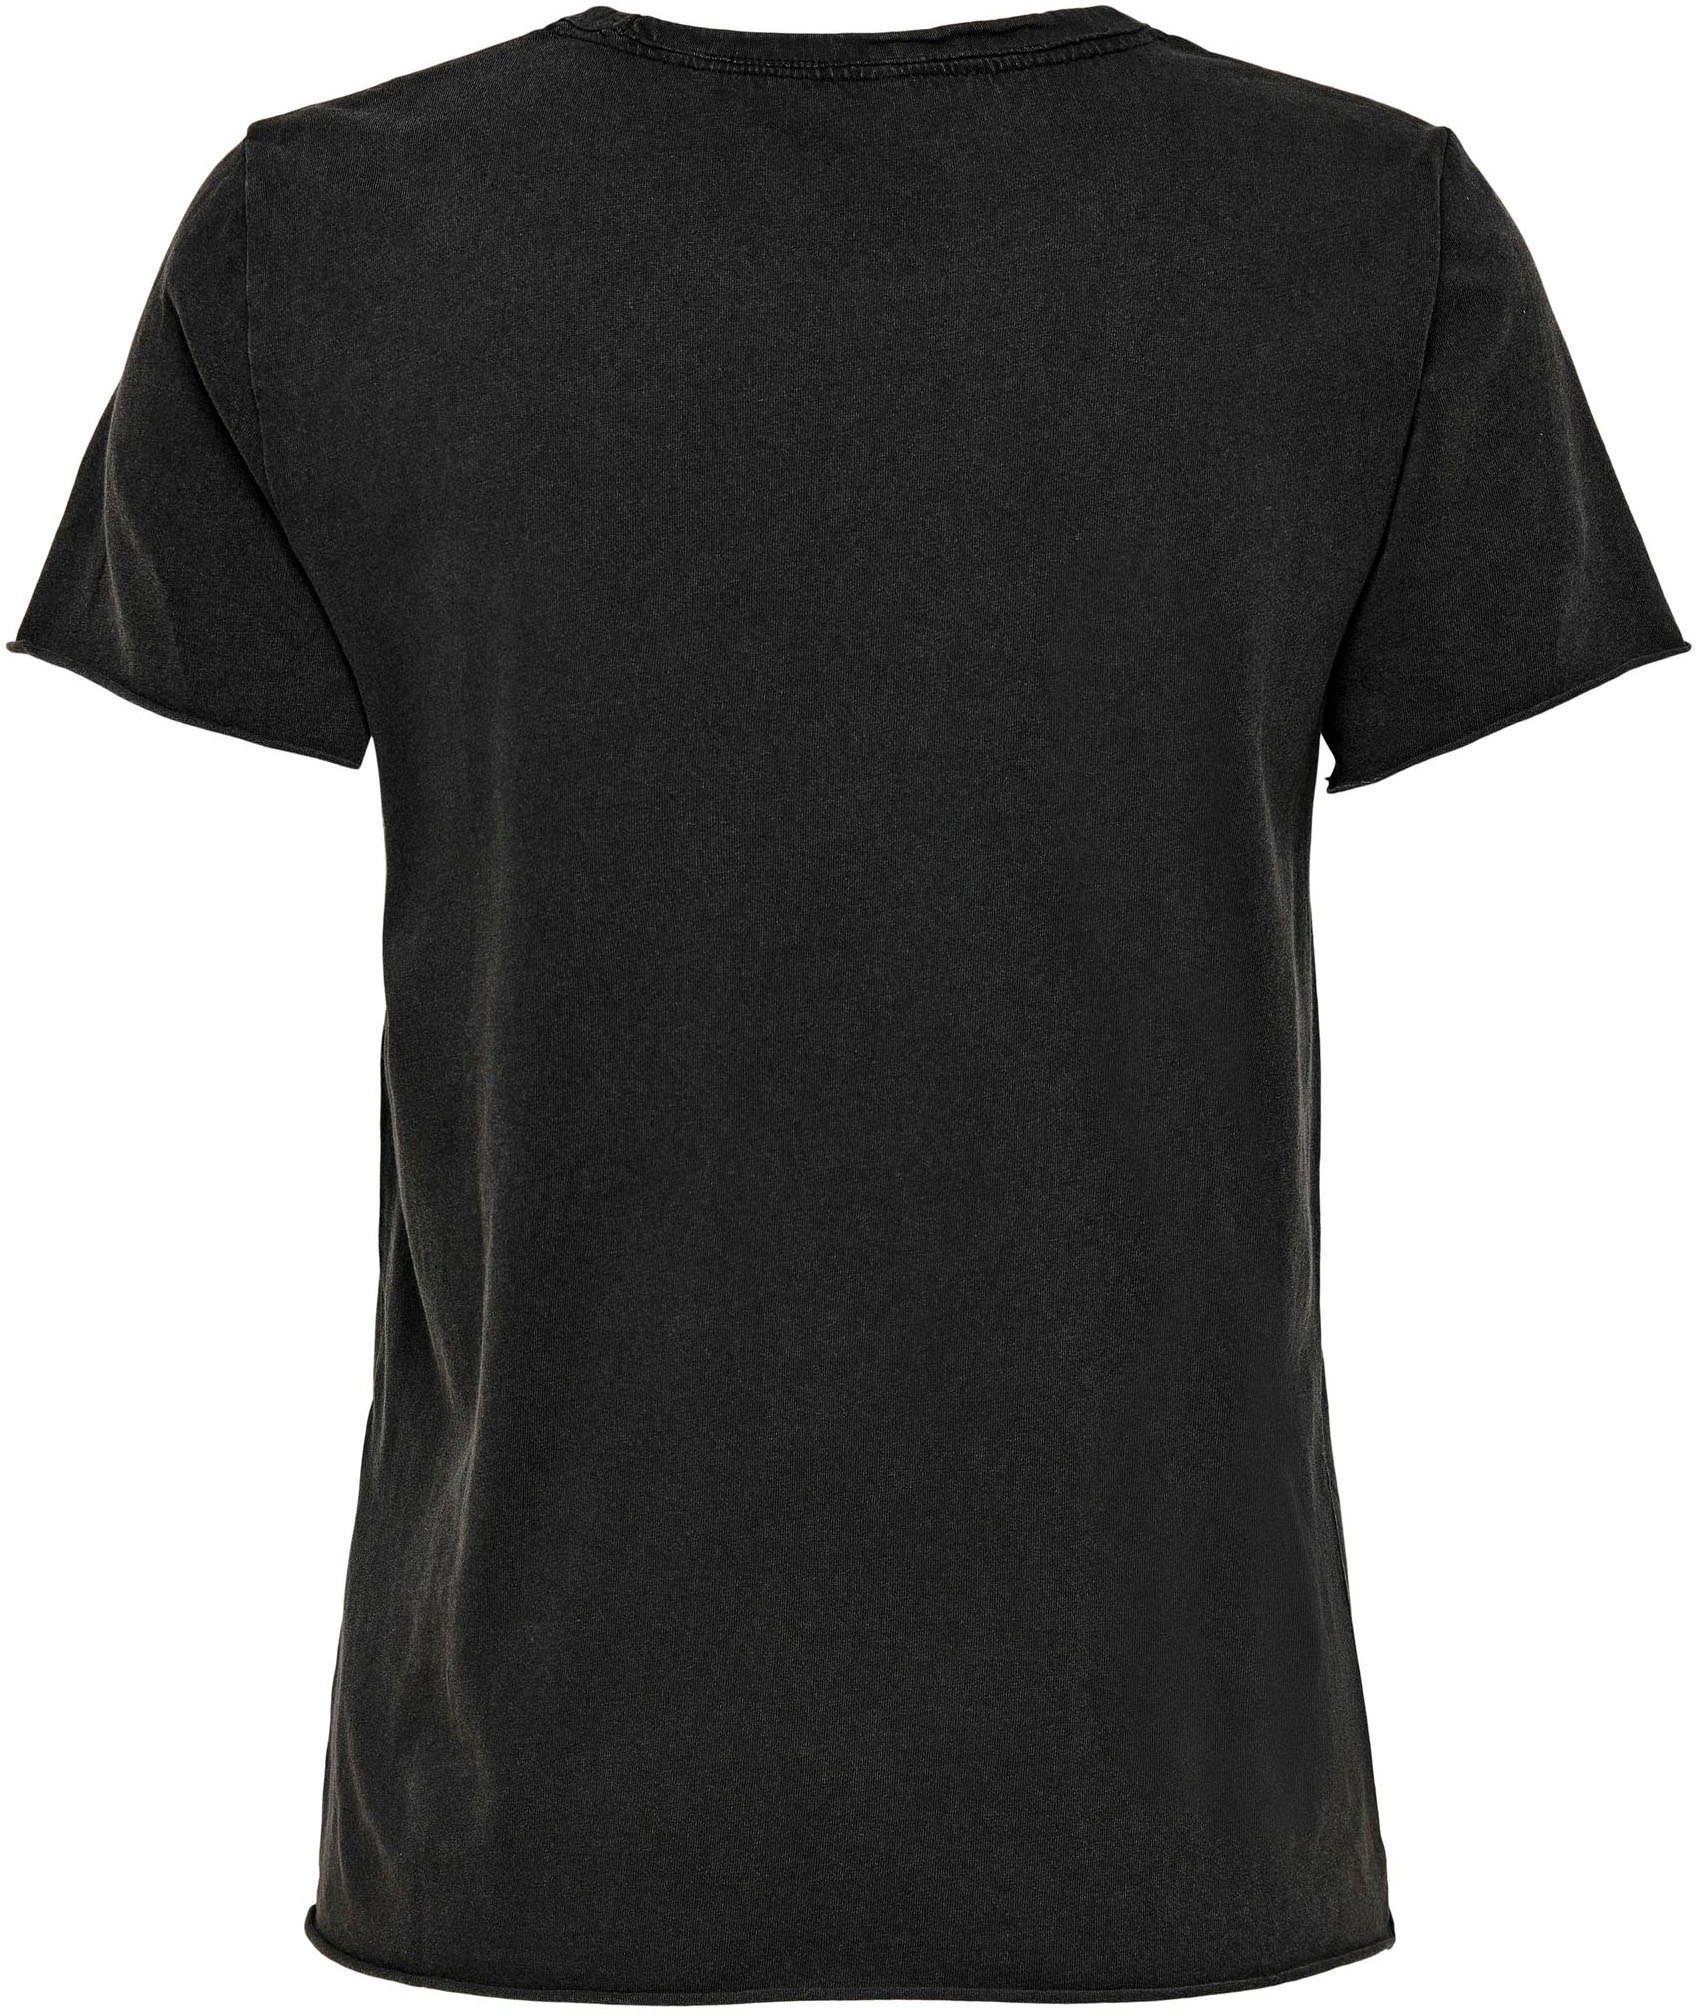 REG Rundhalsshirt NOOS JRS ONLLUCY unterschiedlich Black-Print:BLAZING bedruckt ONLY TOP S/S